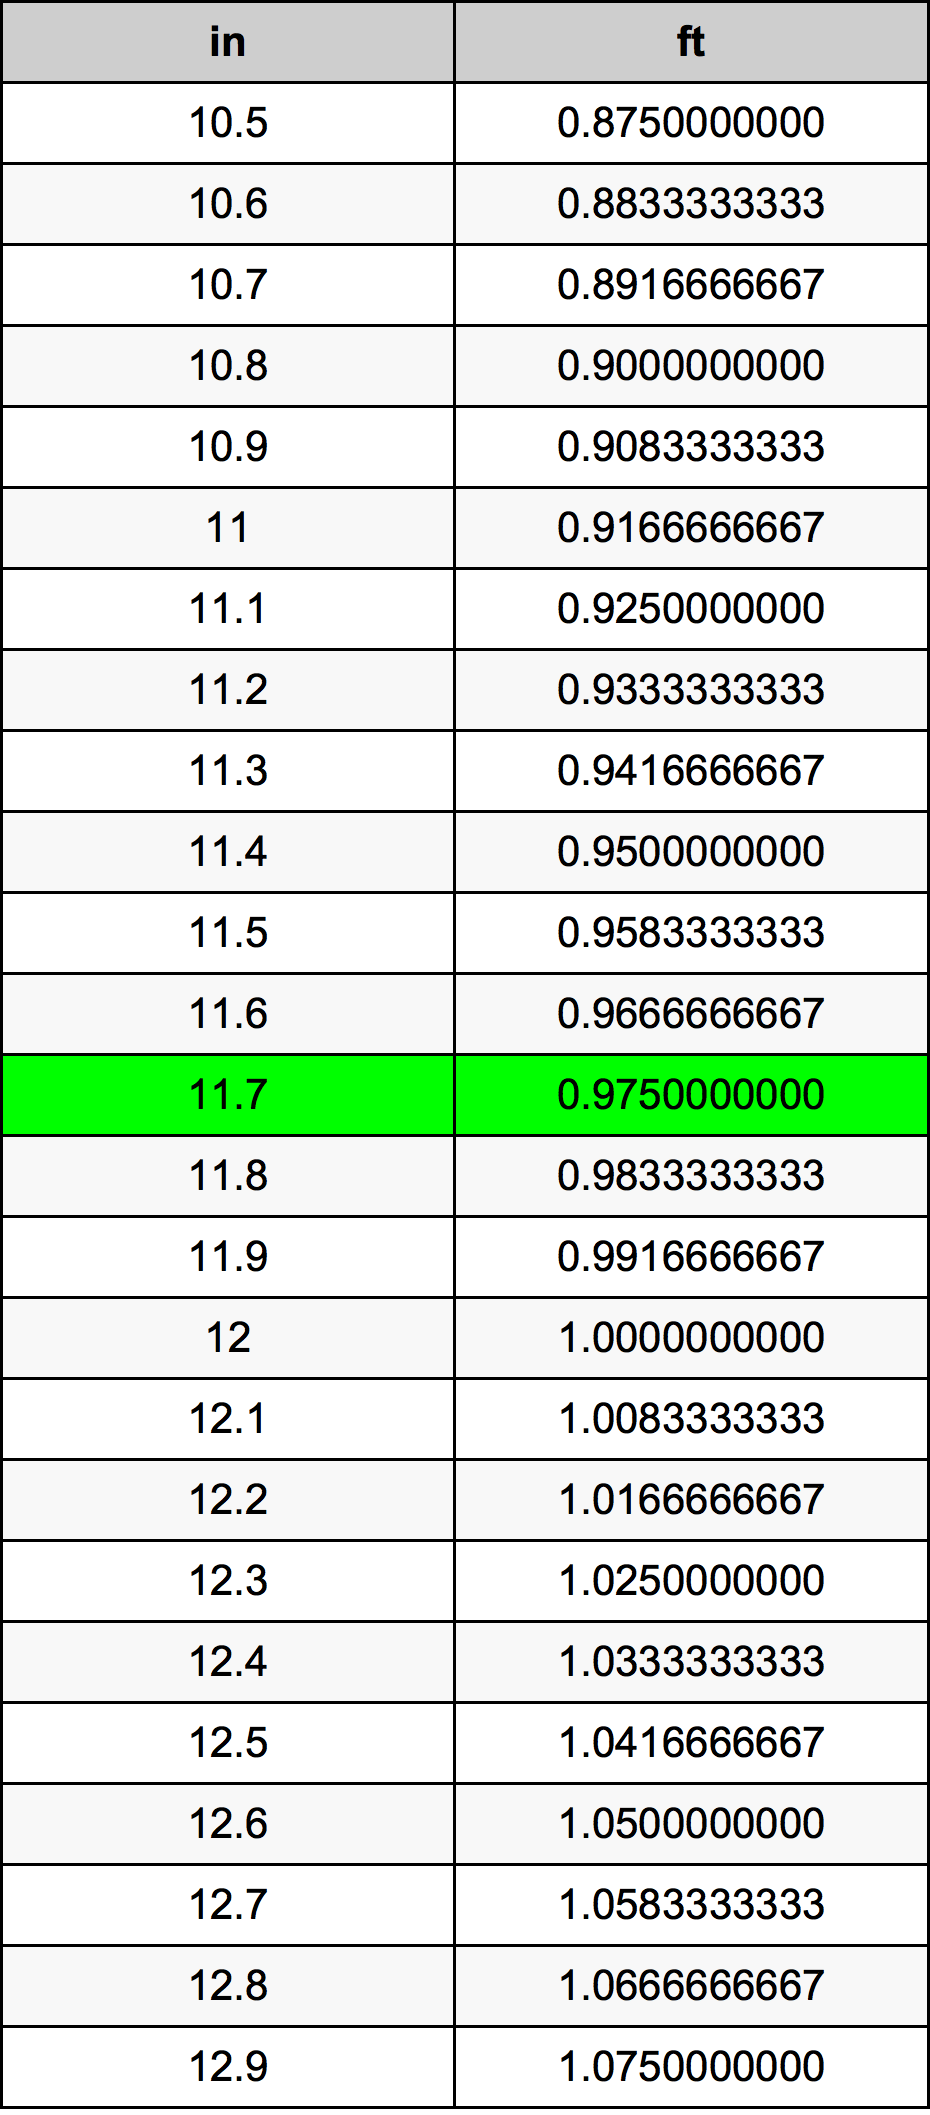 11.7 Pulzier konverżjoni tabella